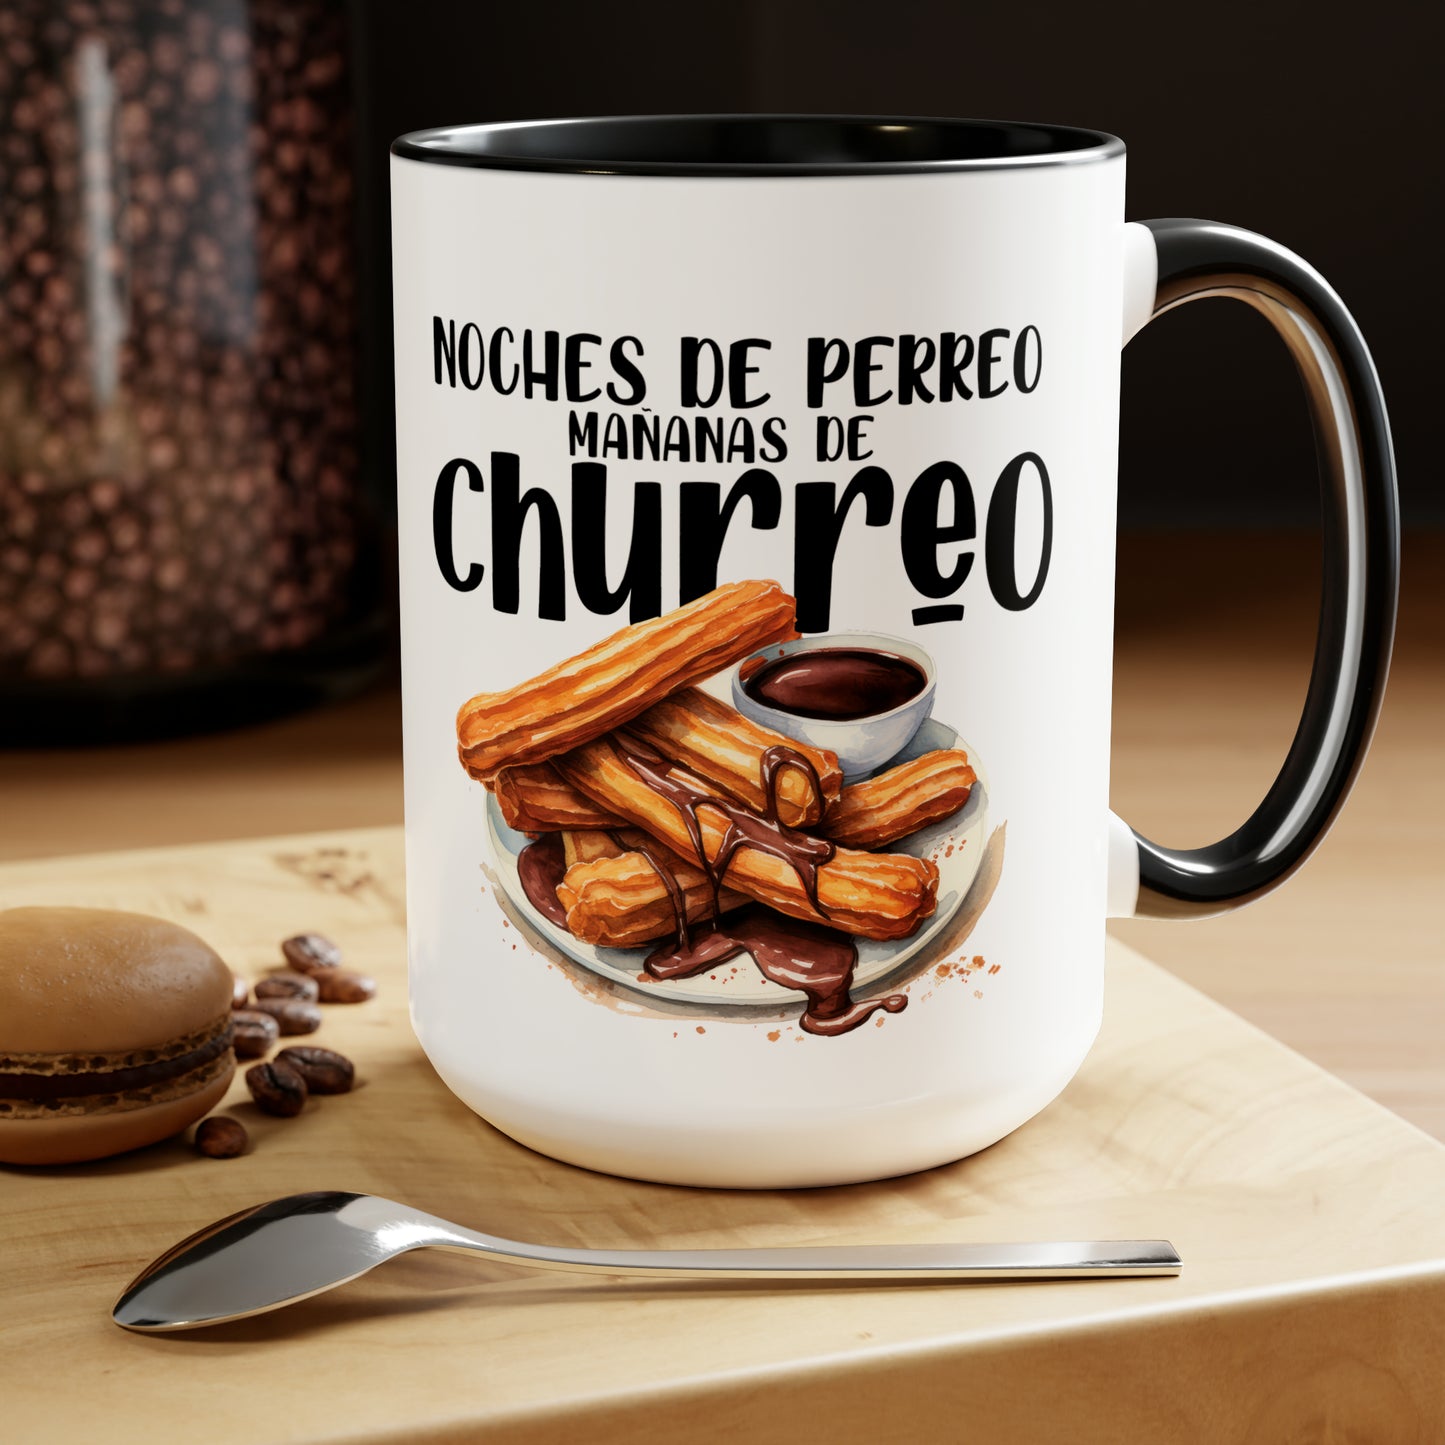 Churros - Taza para cafe, te o chocolate / Two-Tone Coffee Mugs, 15oz